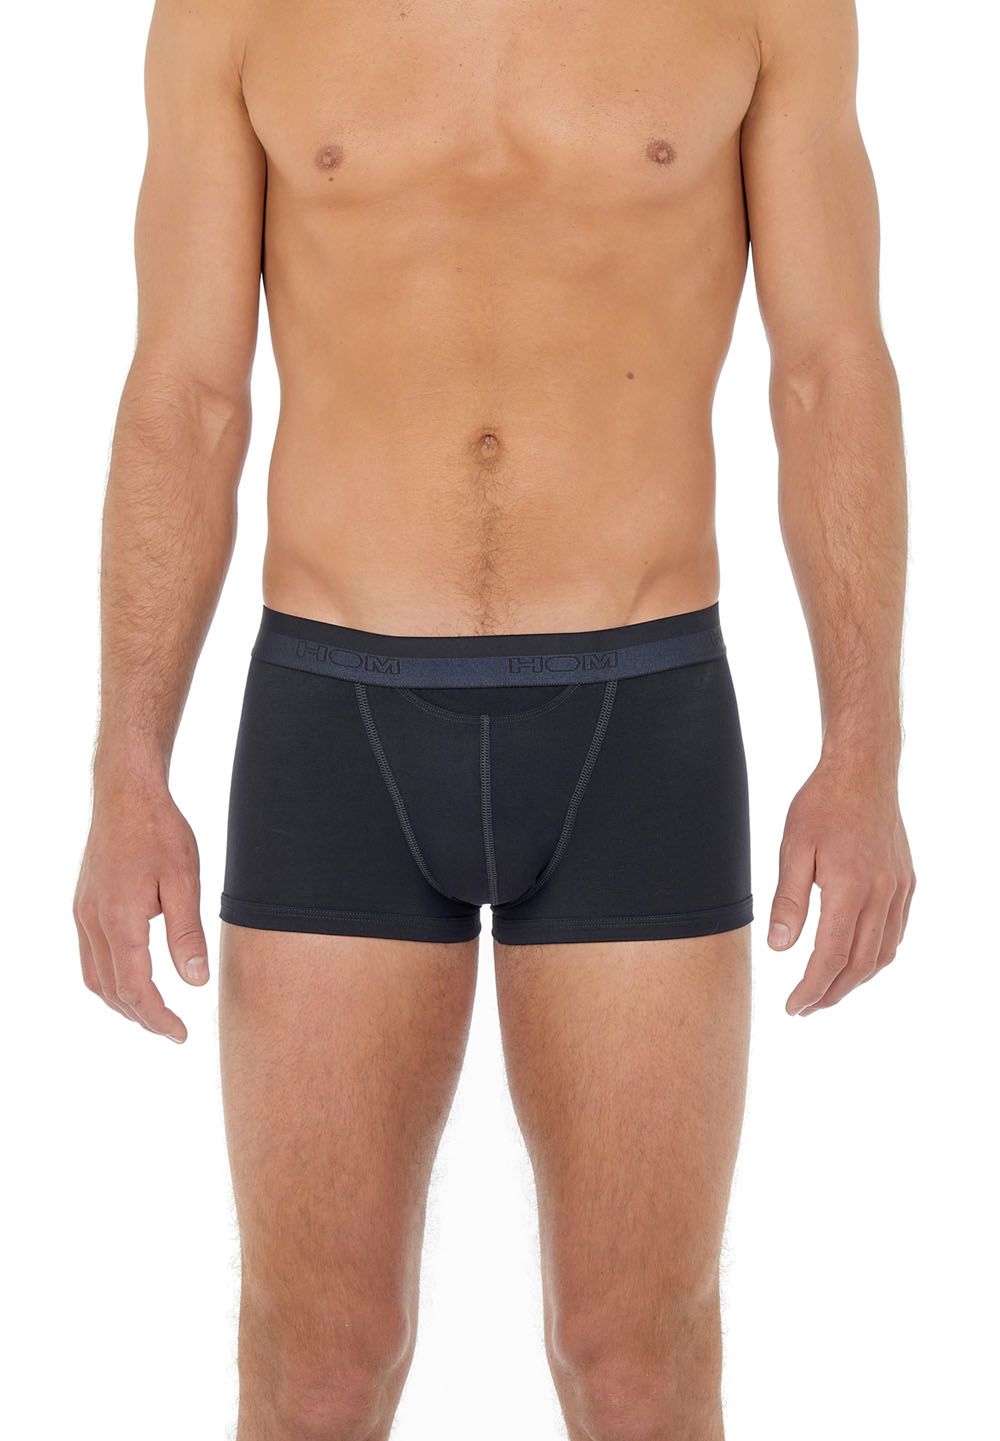 Flieger-Unterhose mit Vorder/Horizontaleingriff - underwear zur Fliegerhose